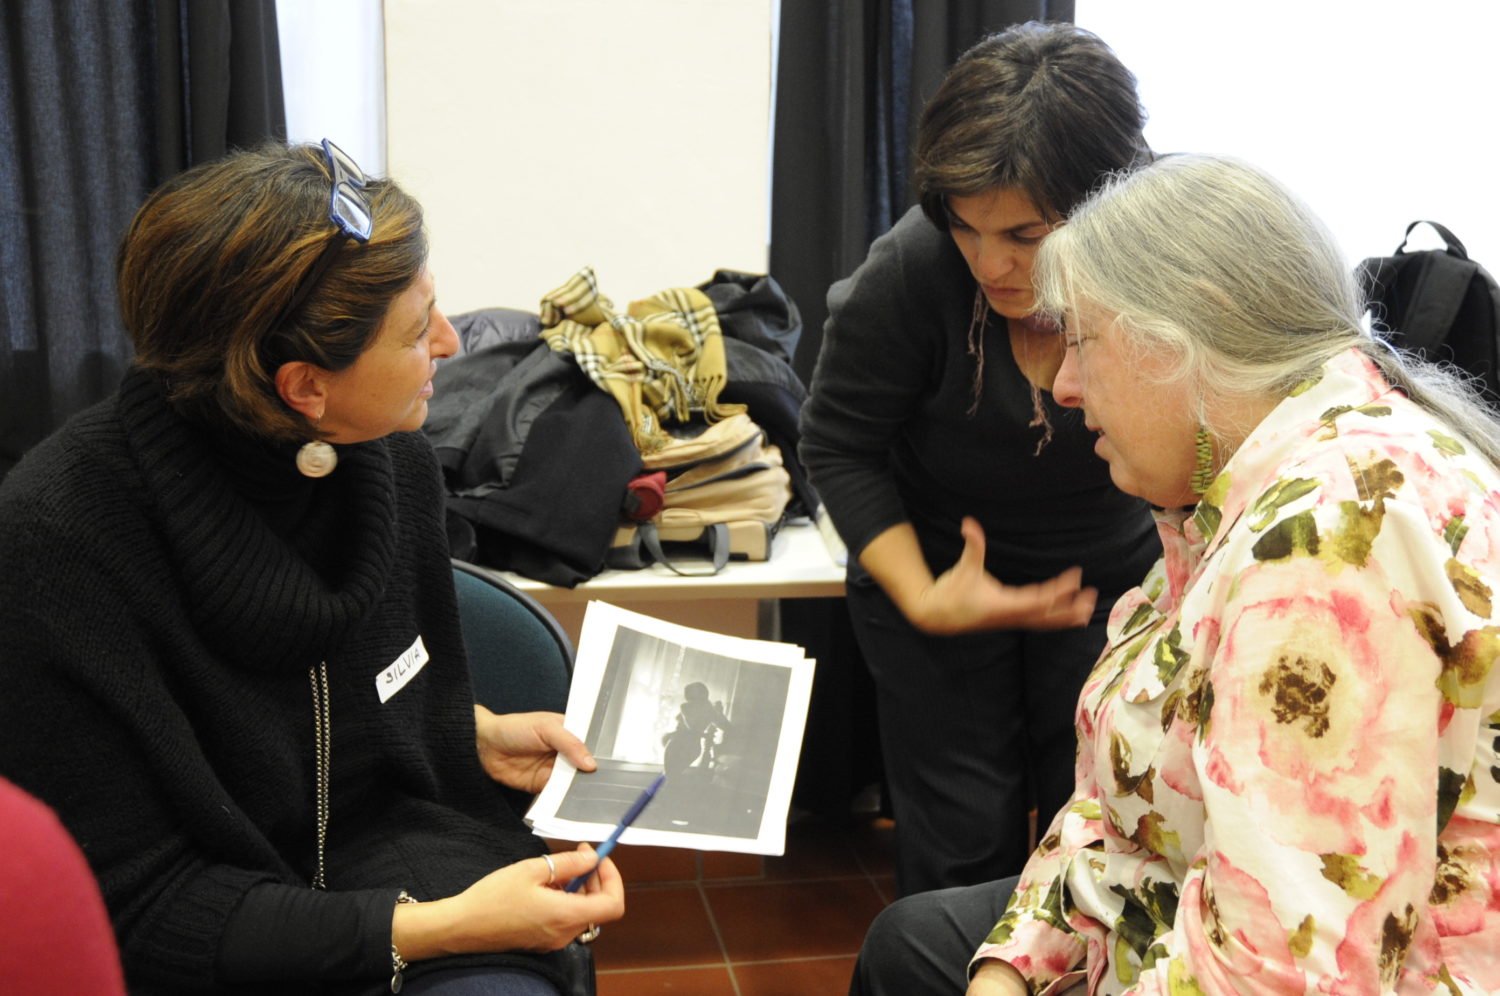 Judy Weiser “Workshop esperienziale sulle tecniche di fototerapia: come le fotografie possono essere usate per la comprensione e il cambiamento”